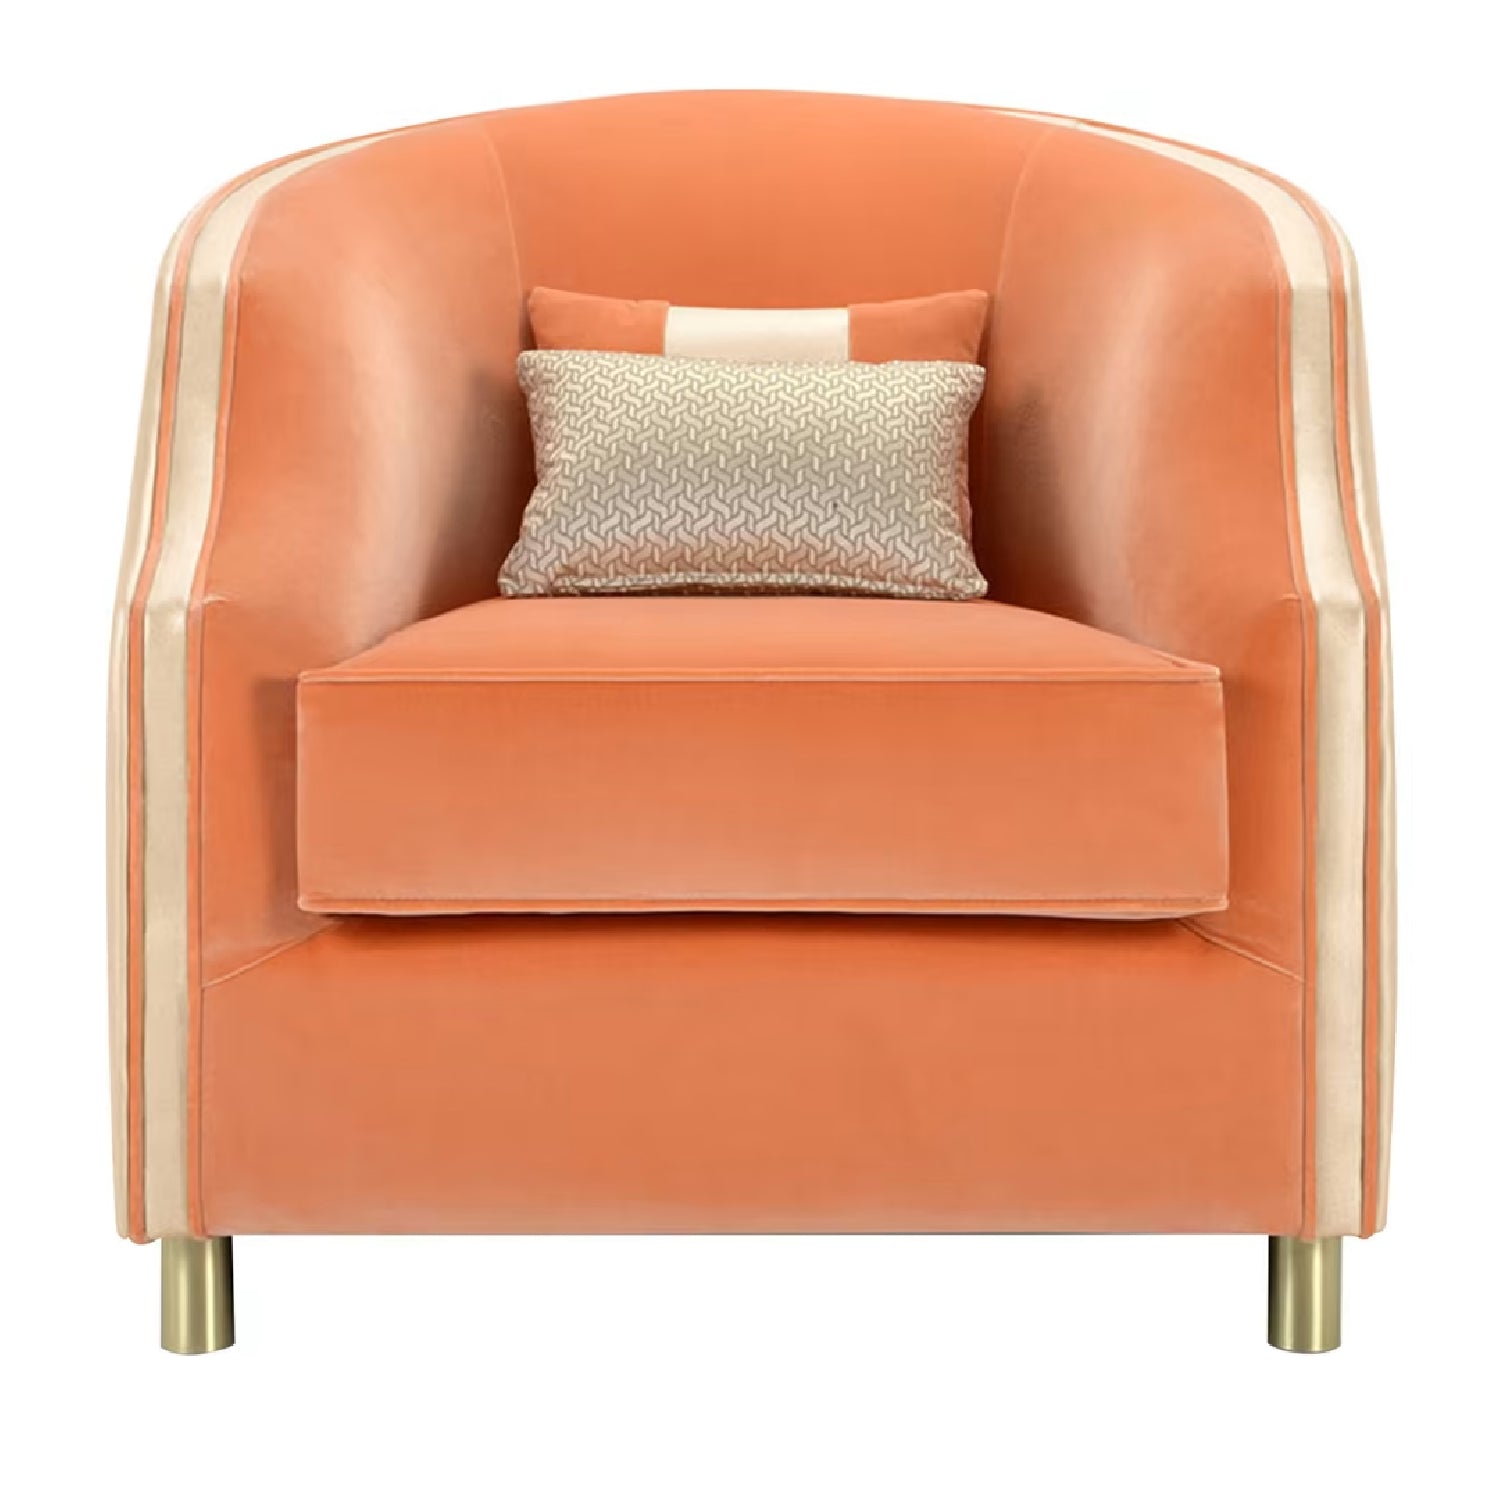 Cleio Small Orange Armchair by Domingo Salotti